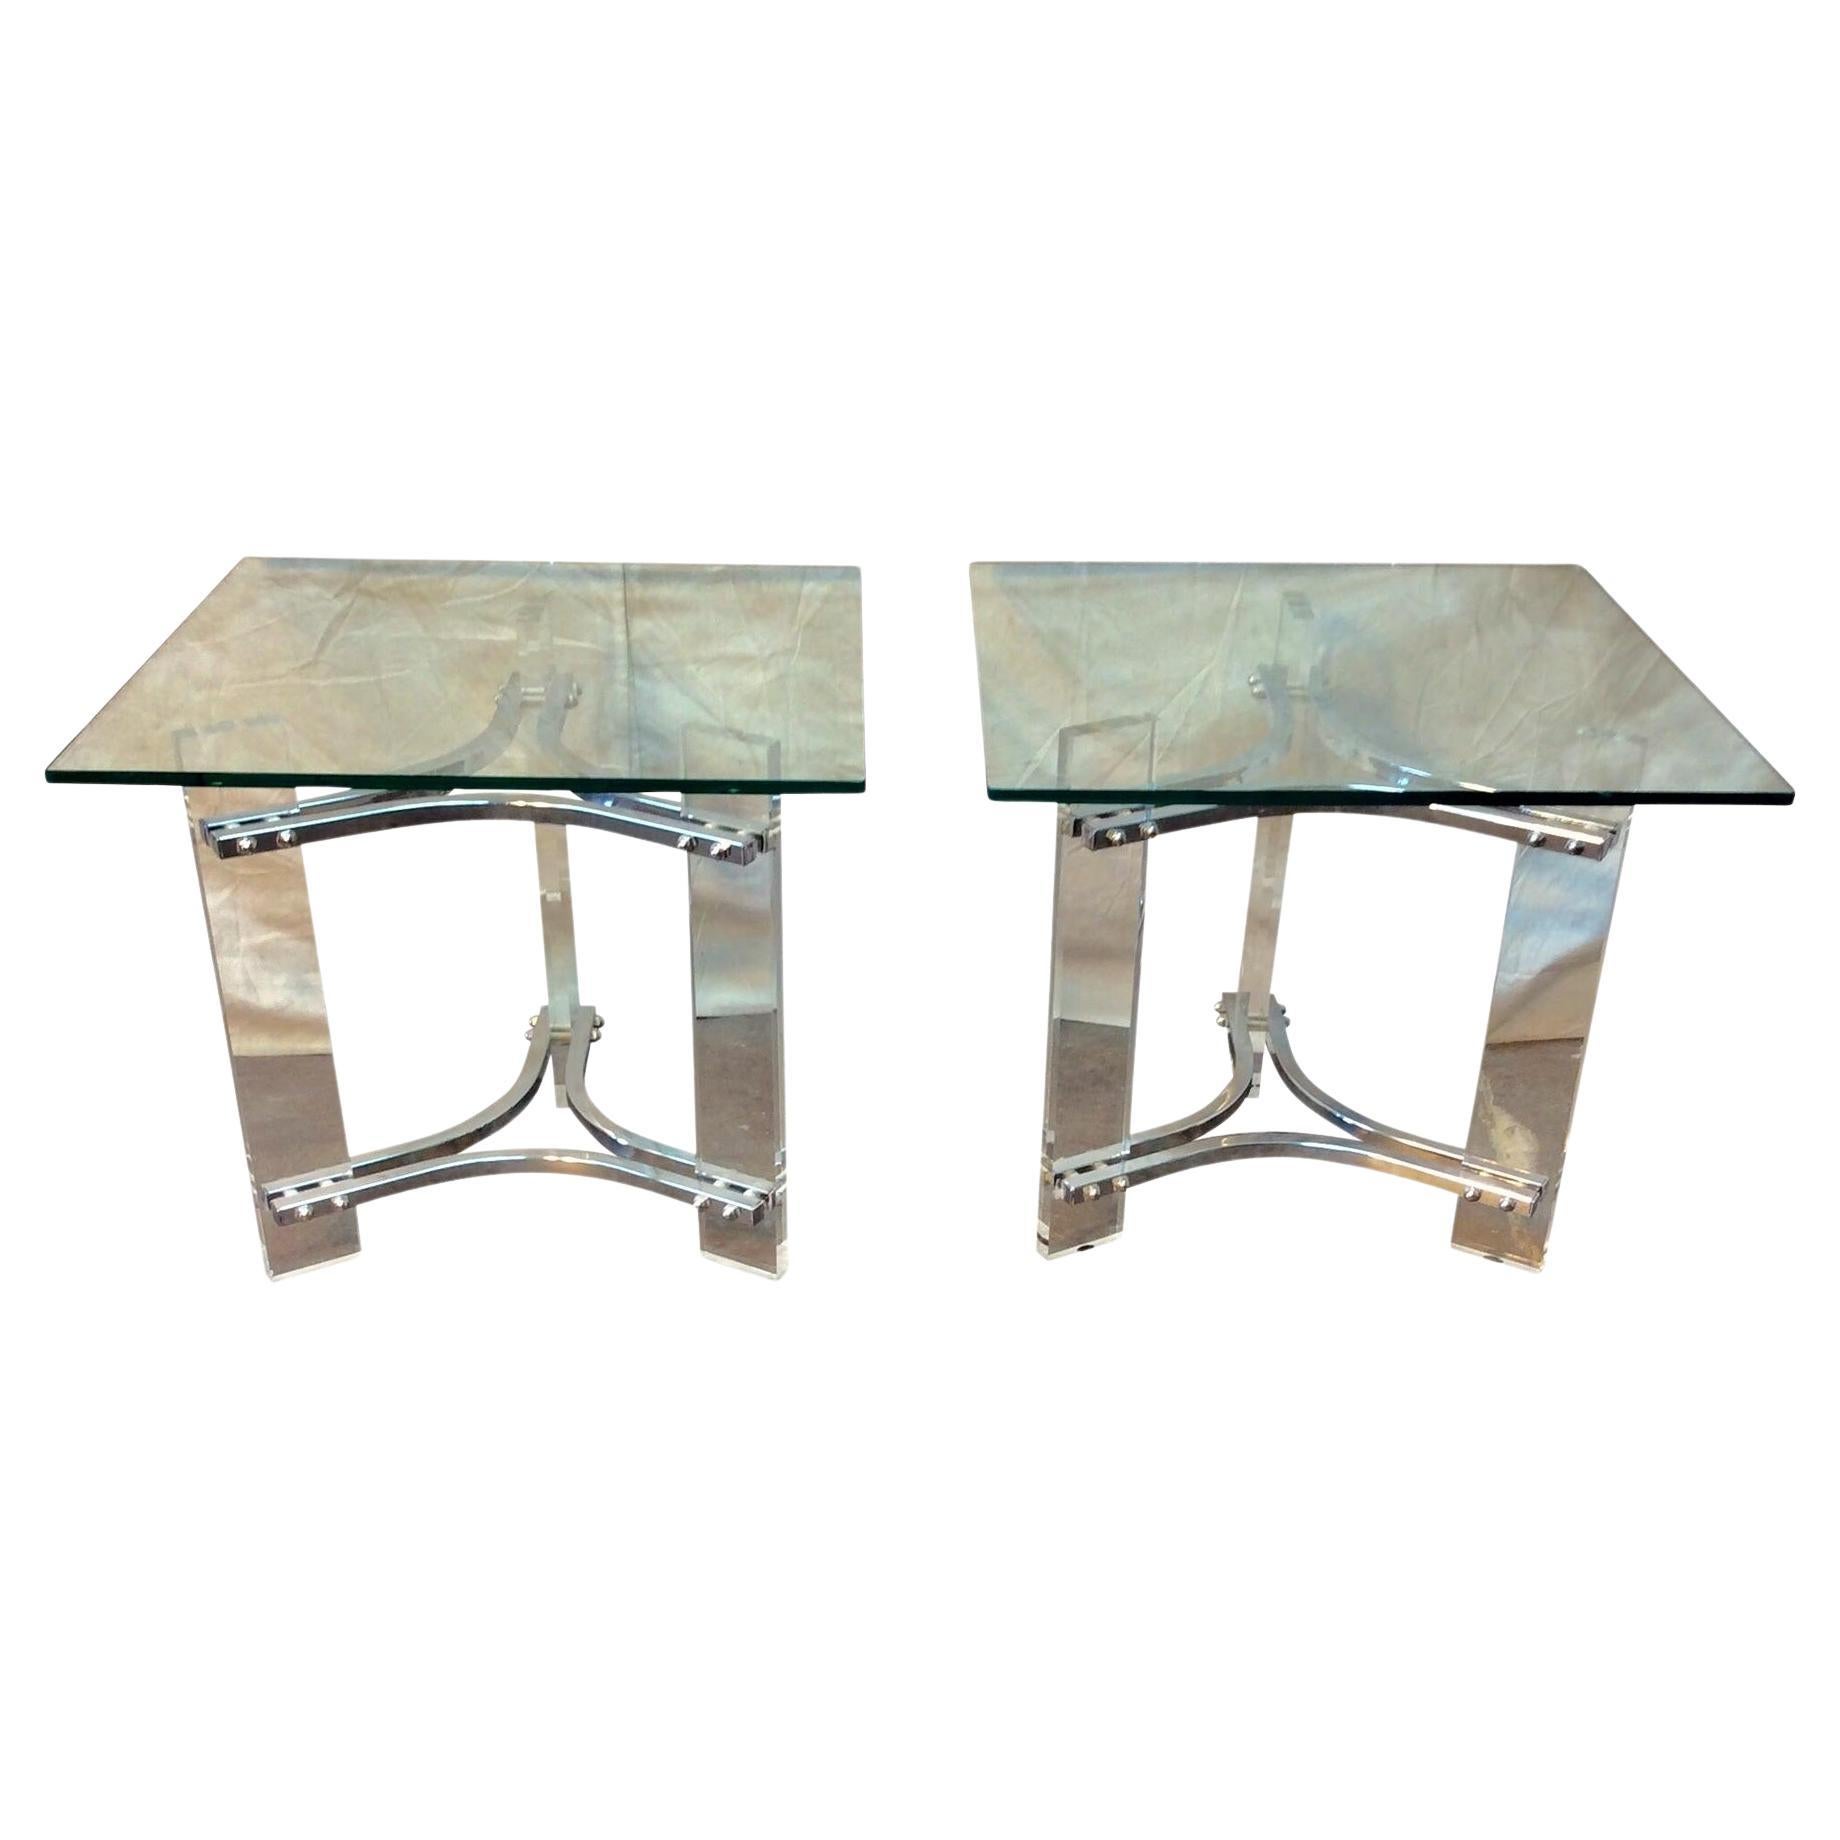  Paire de tables d'appoint sculpturales en chrome lucite et verre de la modernité du milieu du siècle dernier